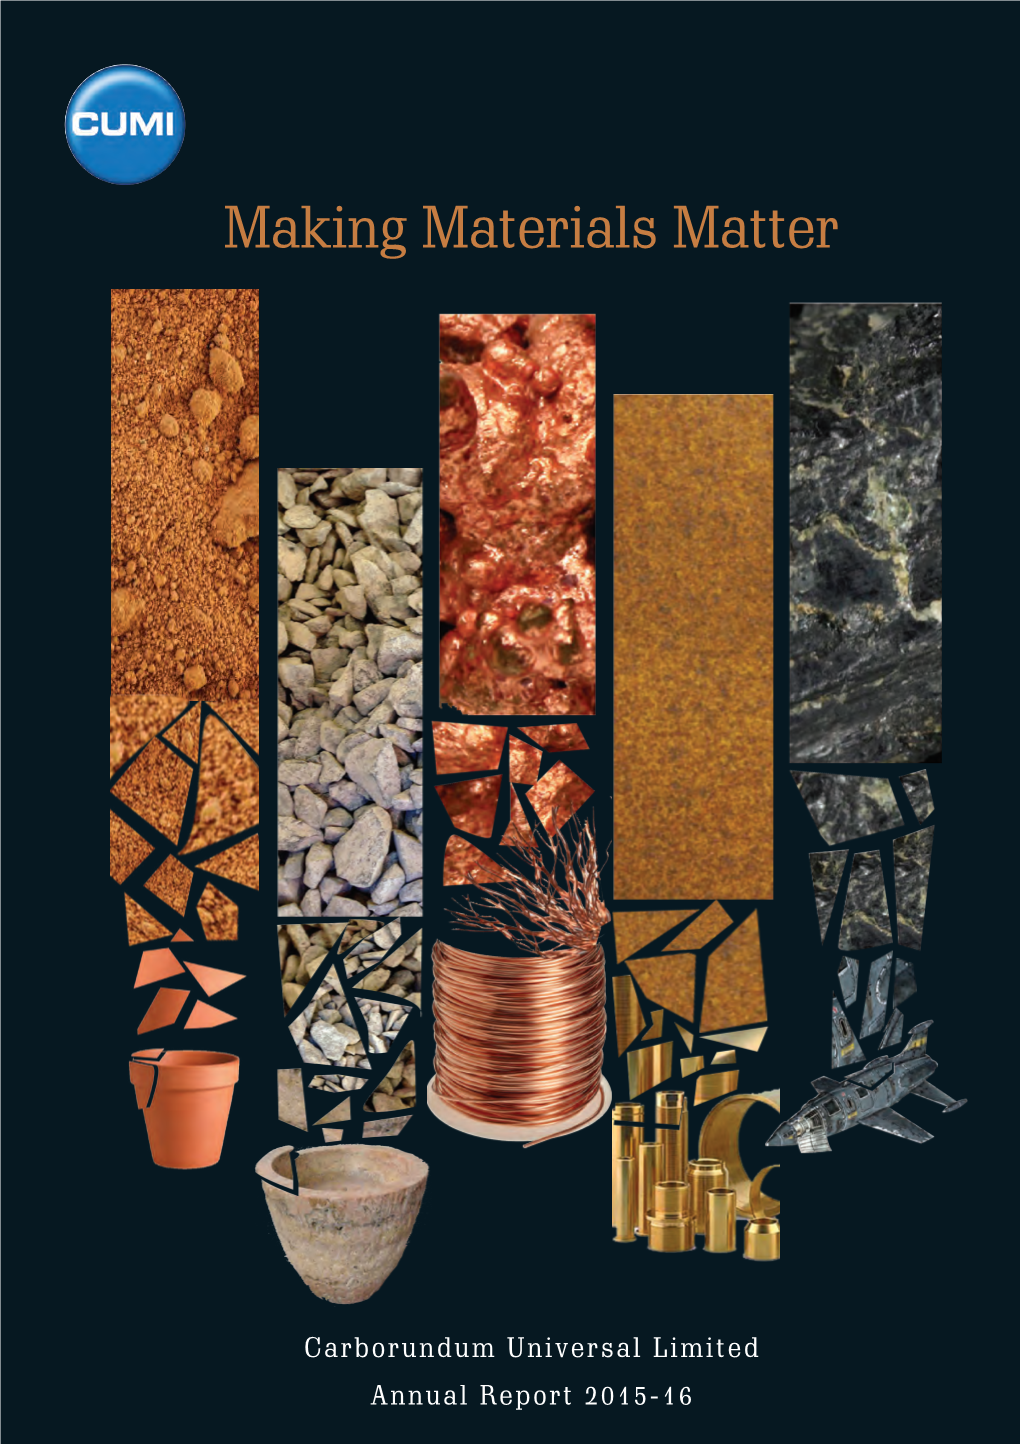 Making Materials Matter